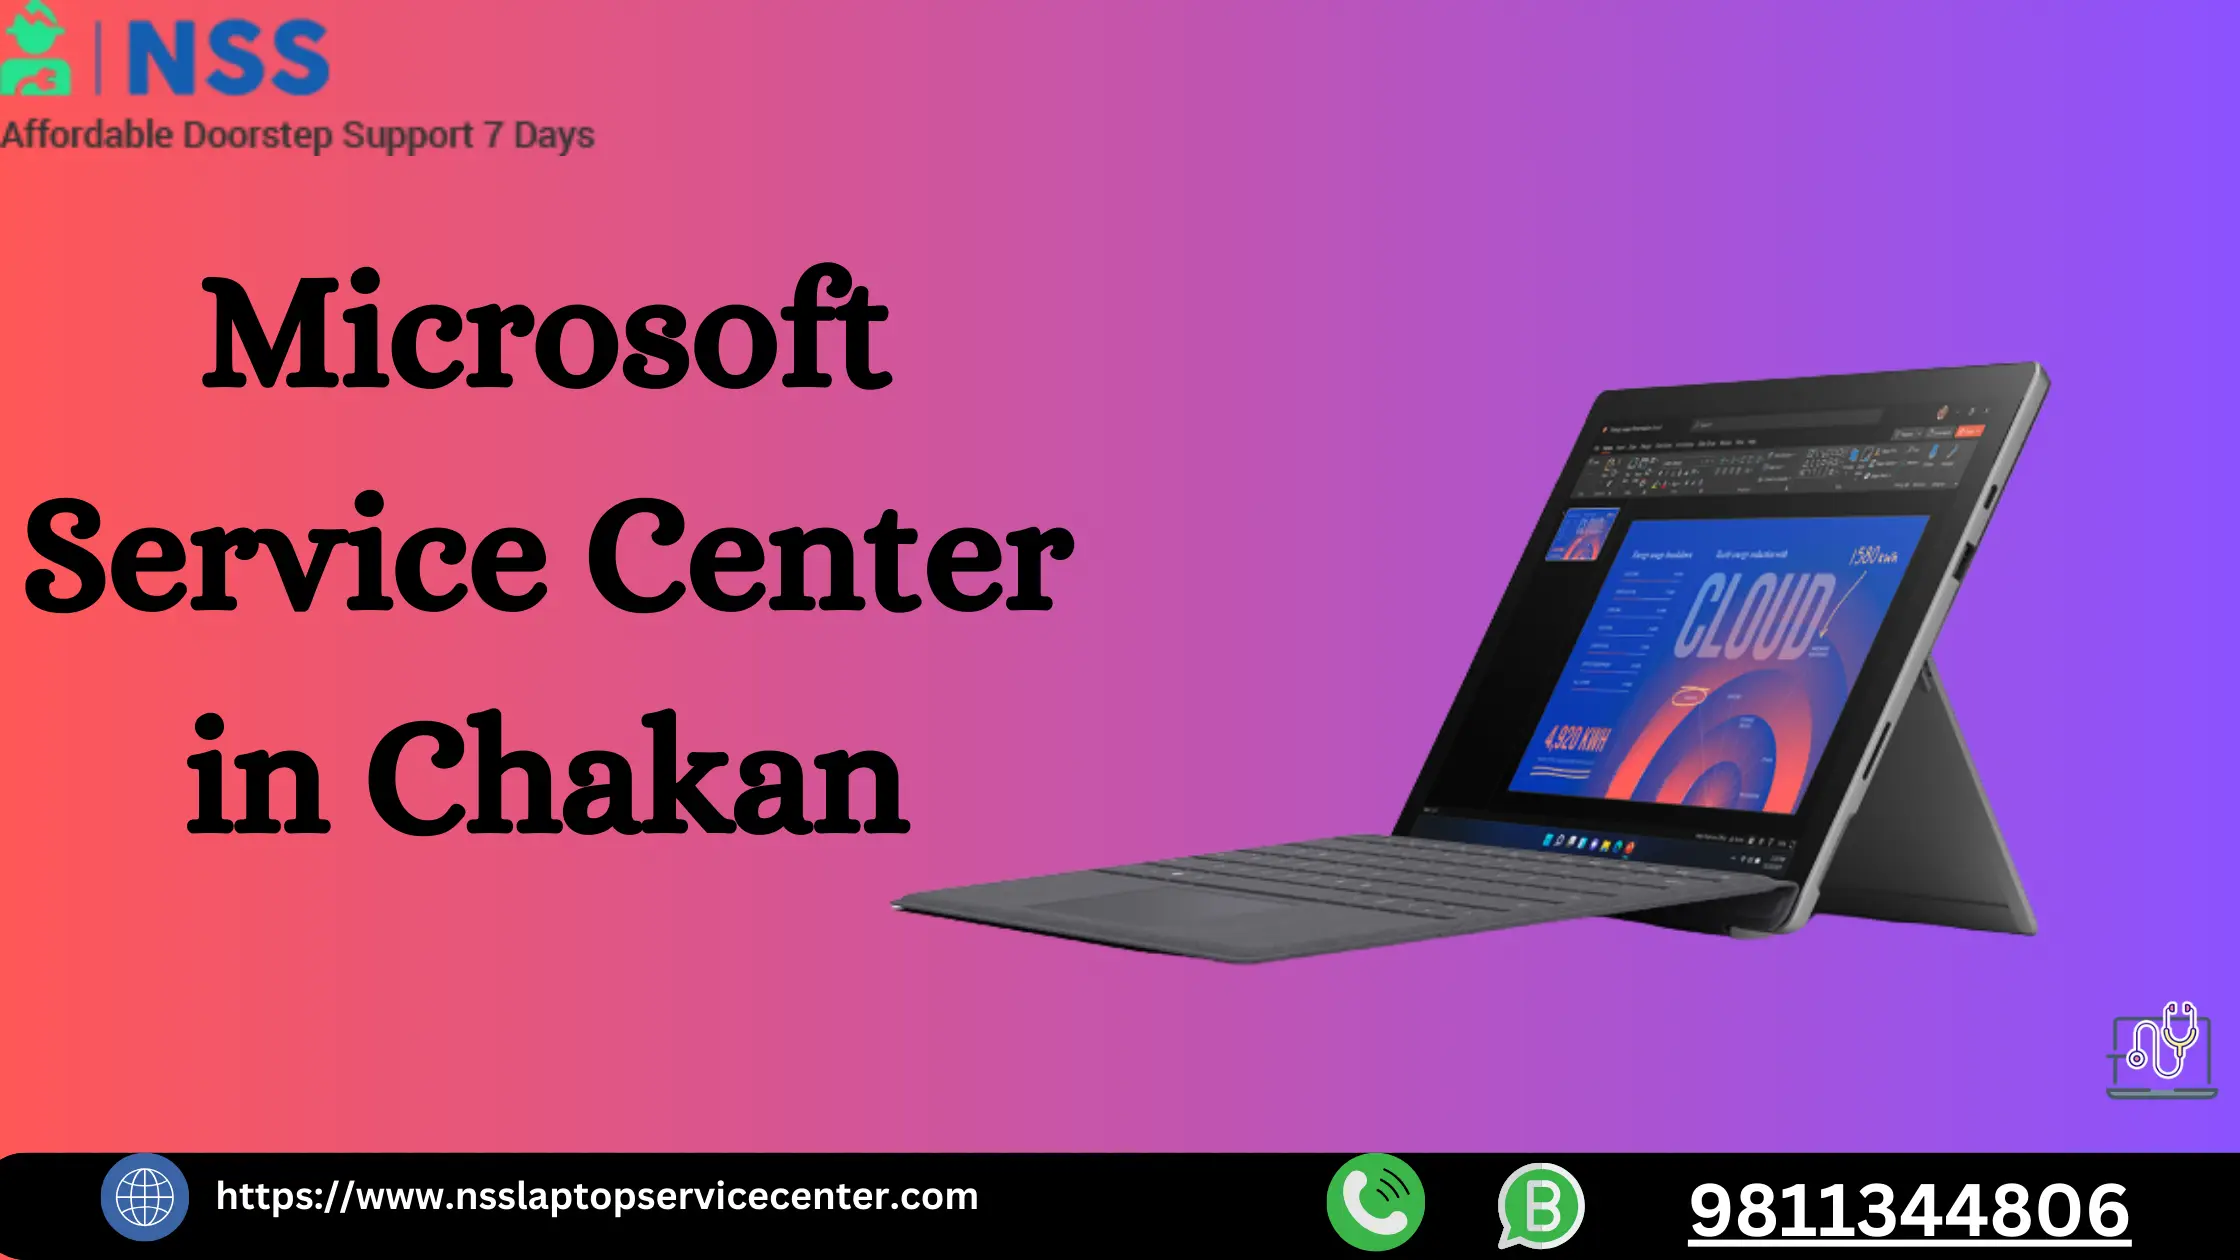 Microsoft Service Center in Chakan Near Pune